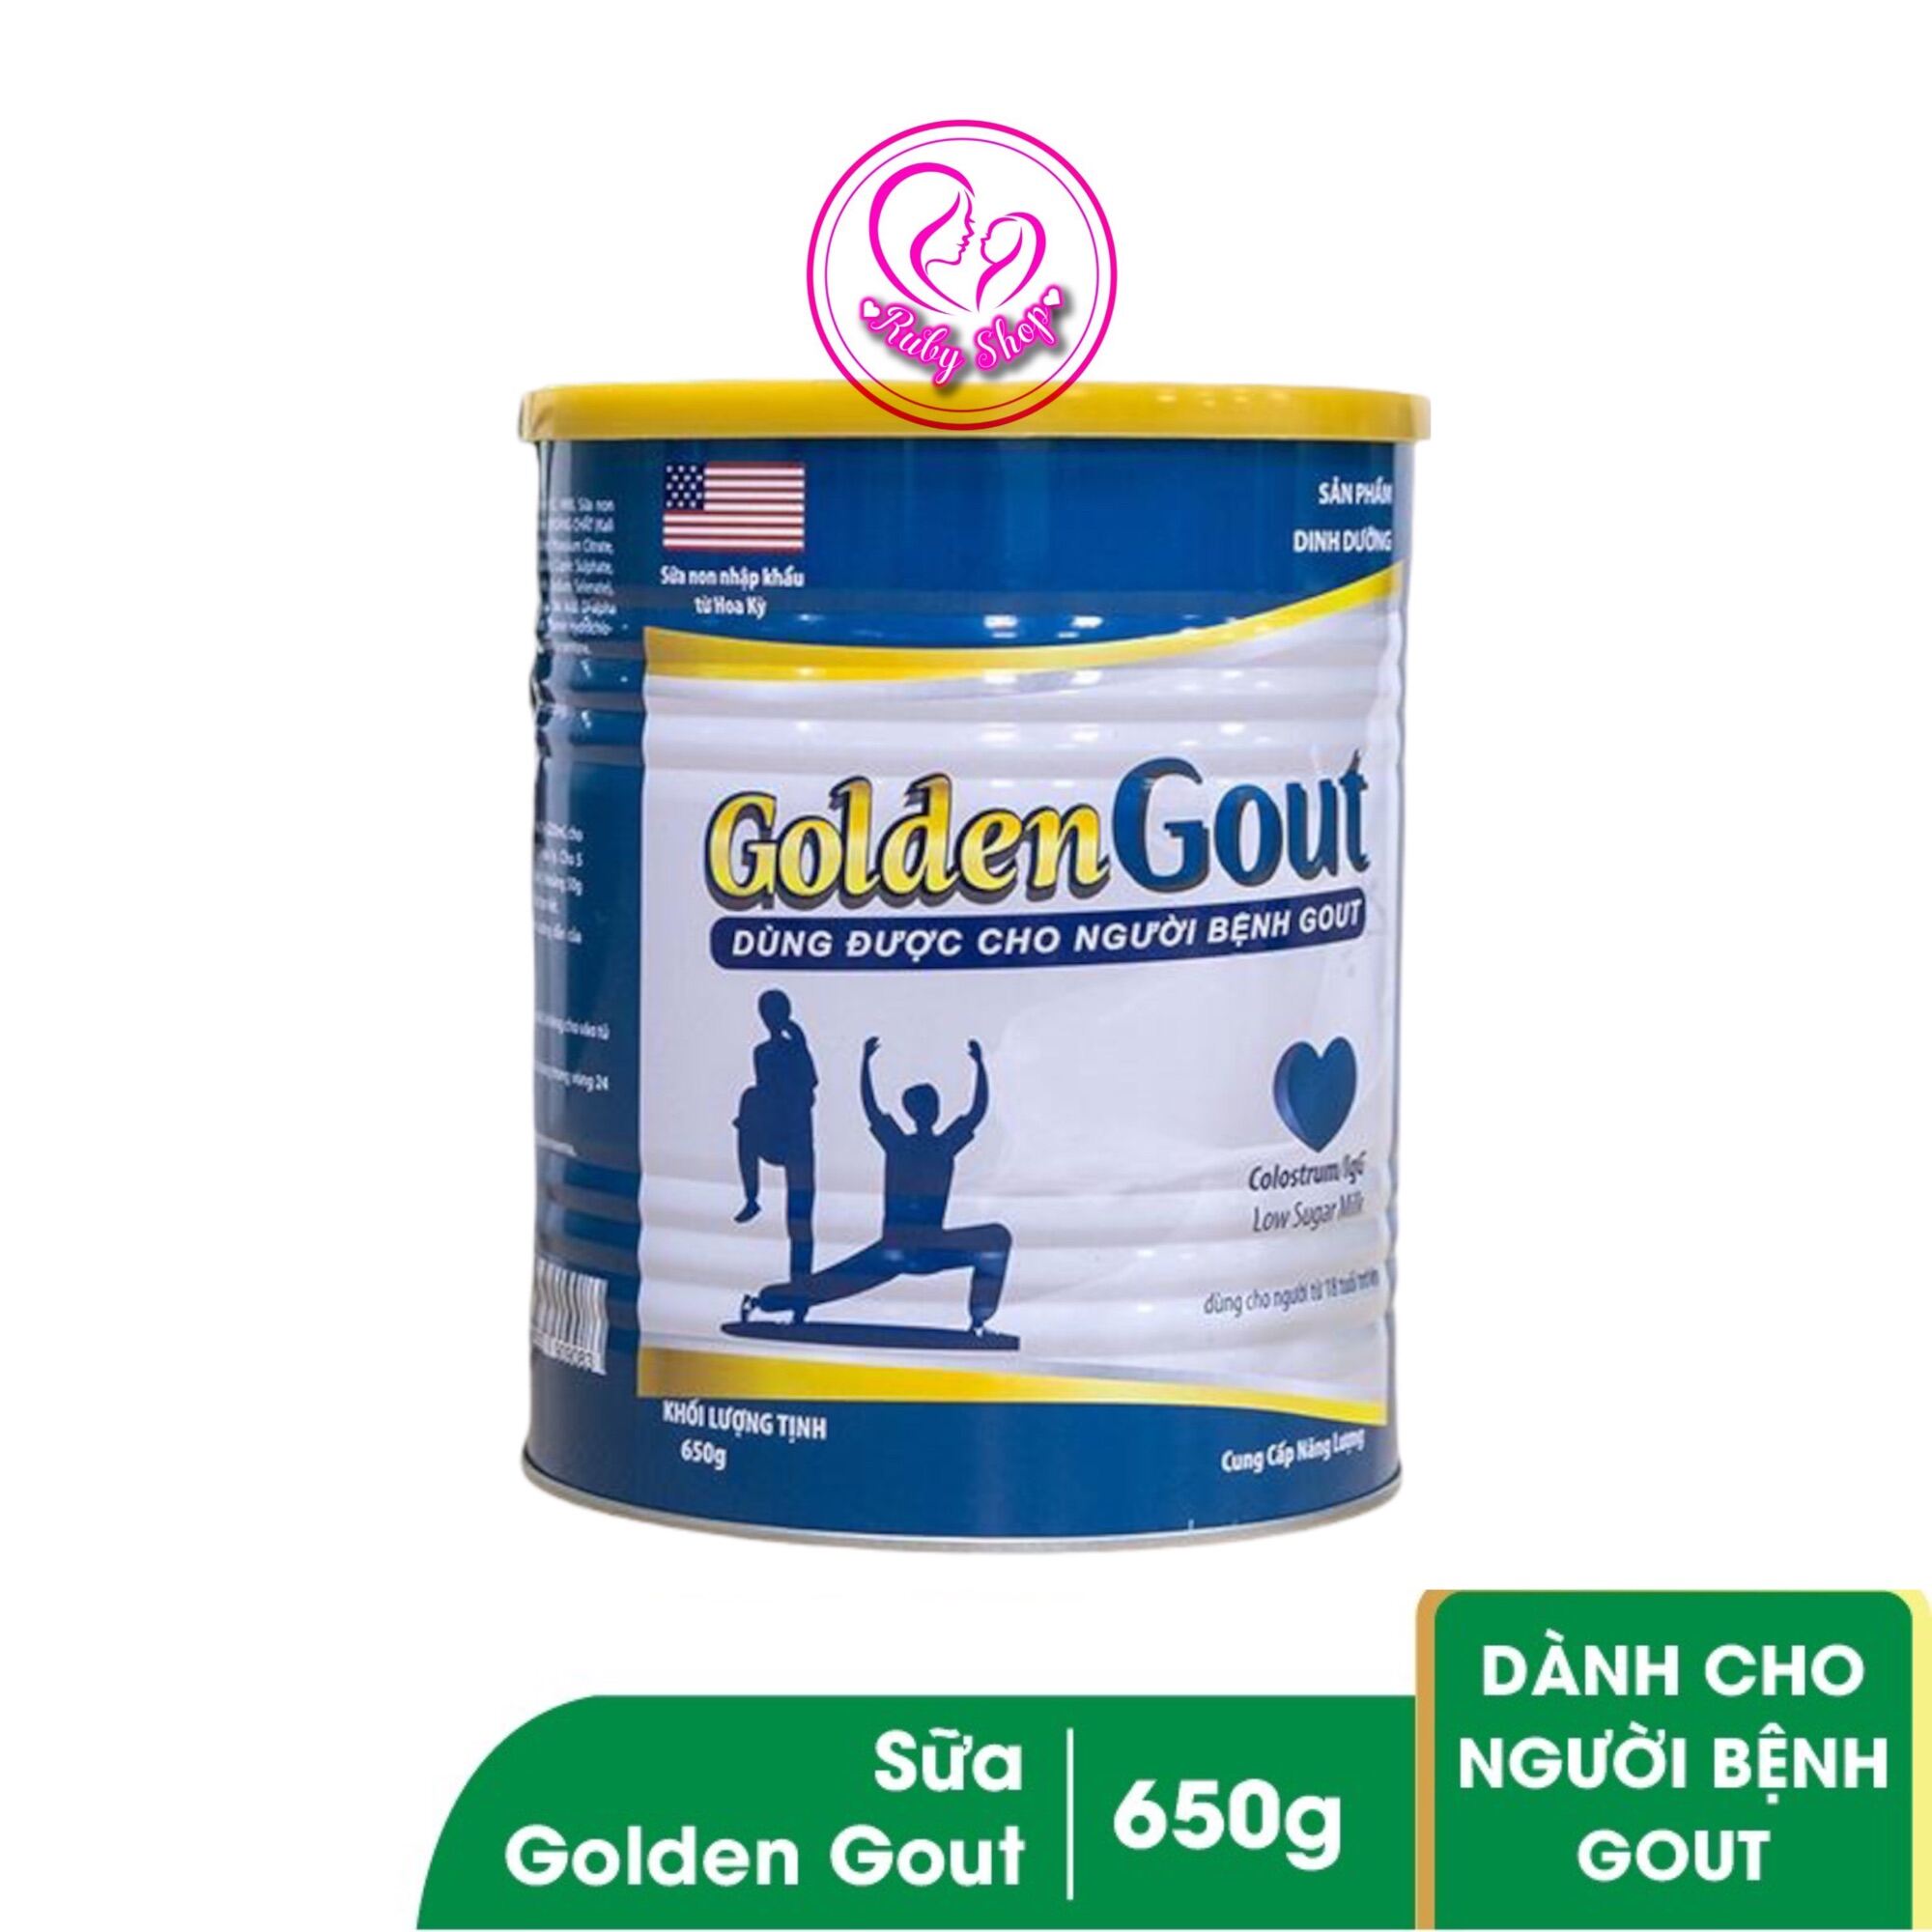 Chính hãng sữa non dành cho người gout - sữa non golden gout hộp 650g - ảnh sản phẩm 1